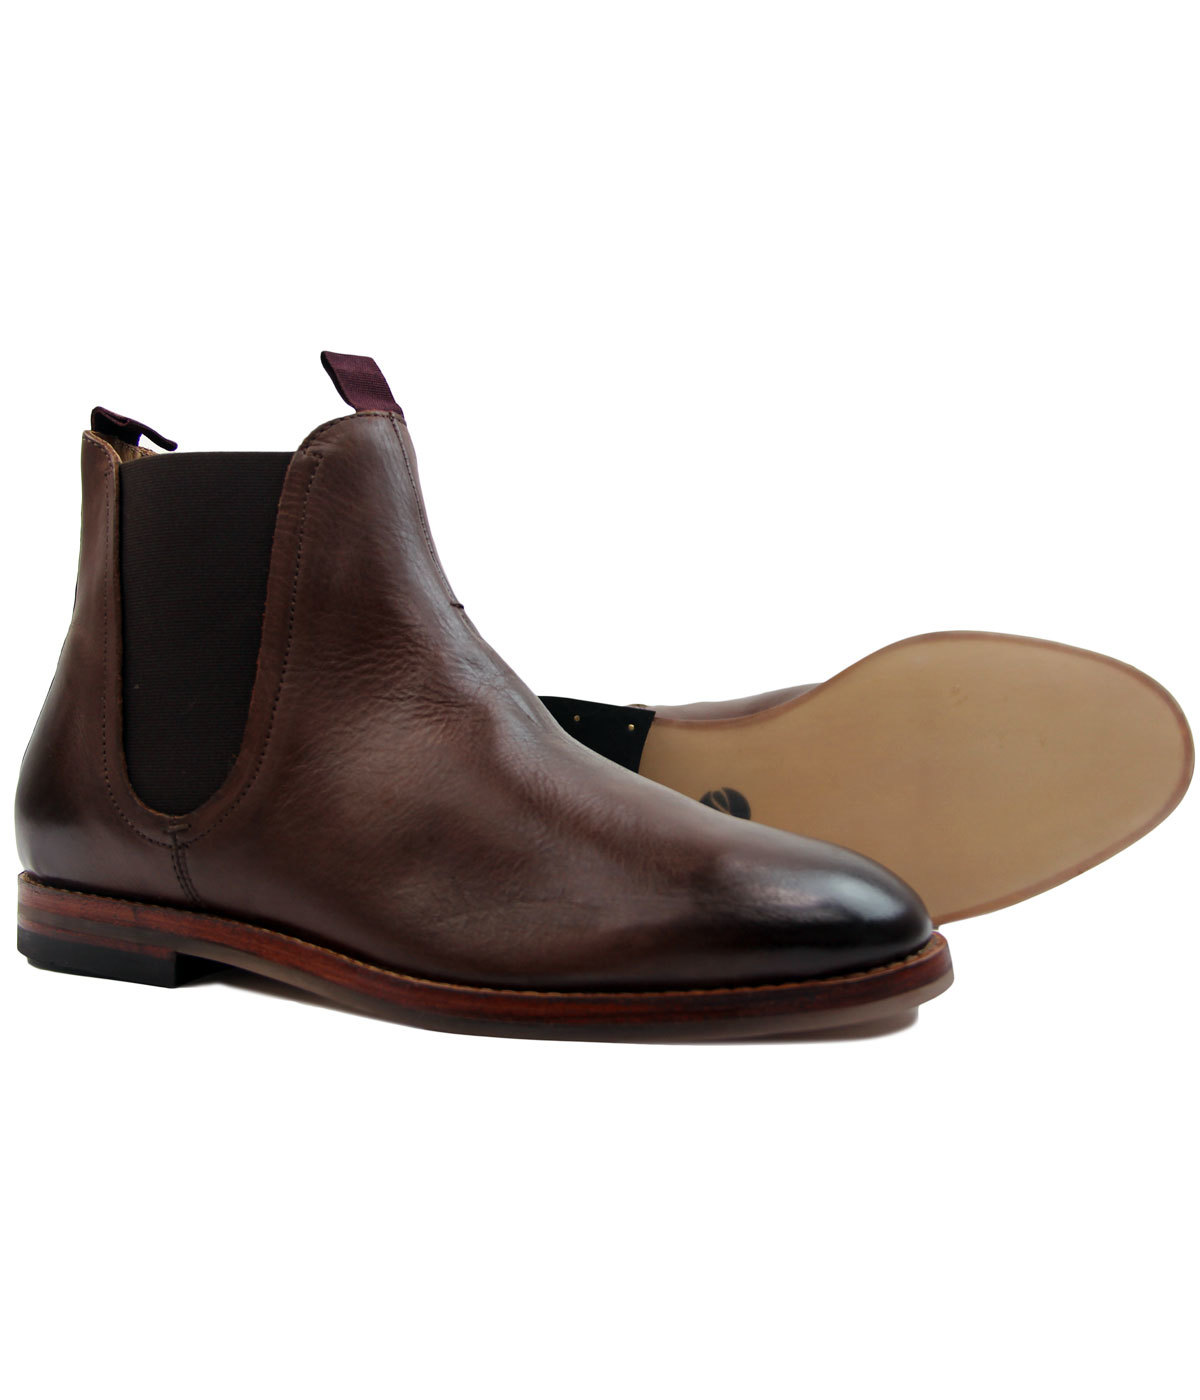 Bunke af Laboratorium tåbelig H BY HUDSON Tamper Retro 1960s Mod Leather Chelsea Boots in Brown